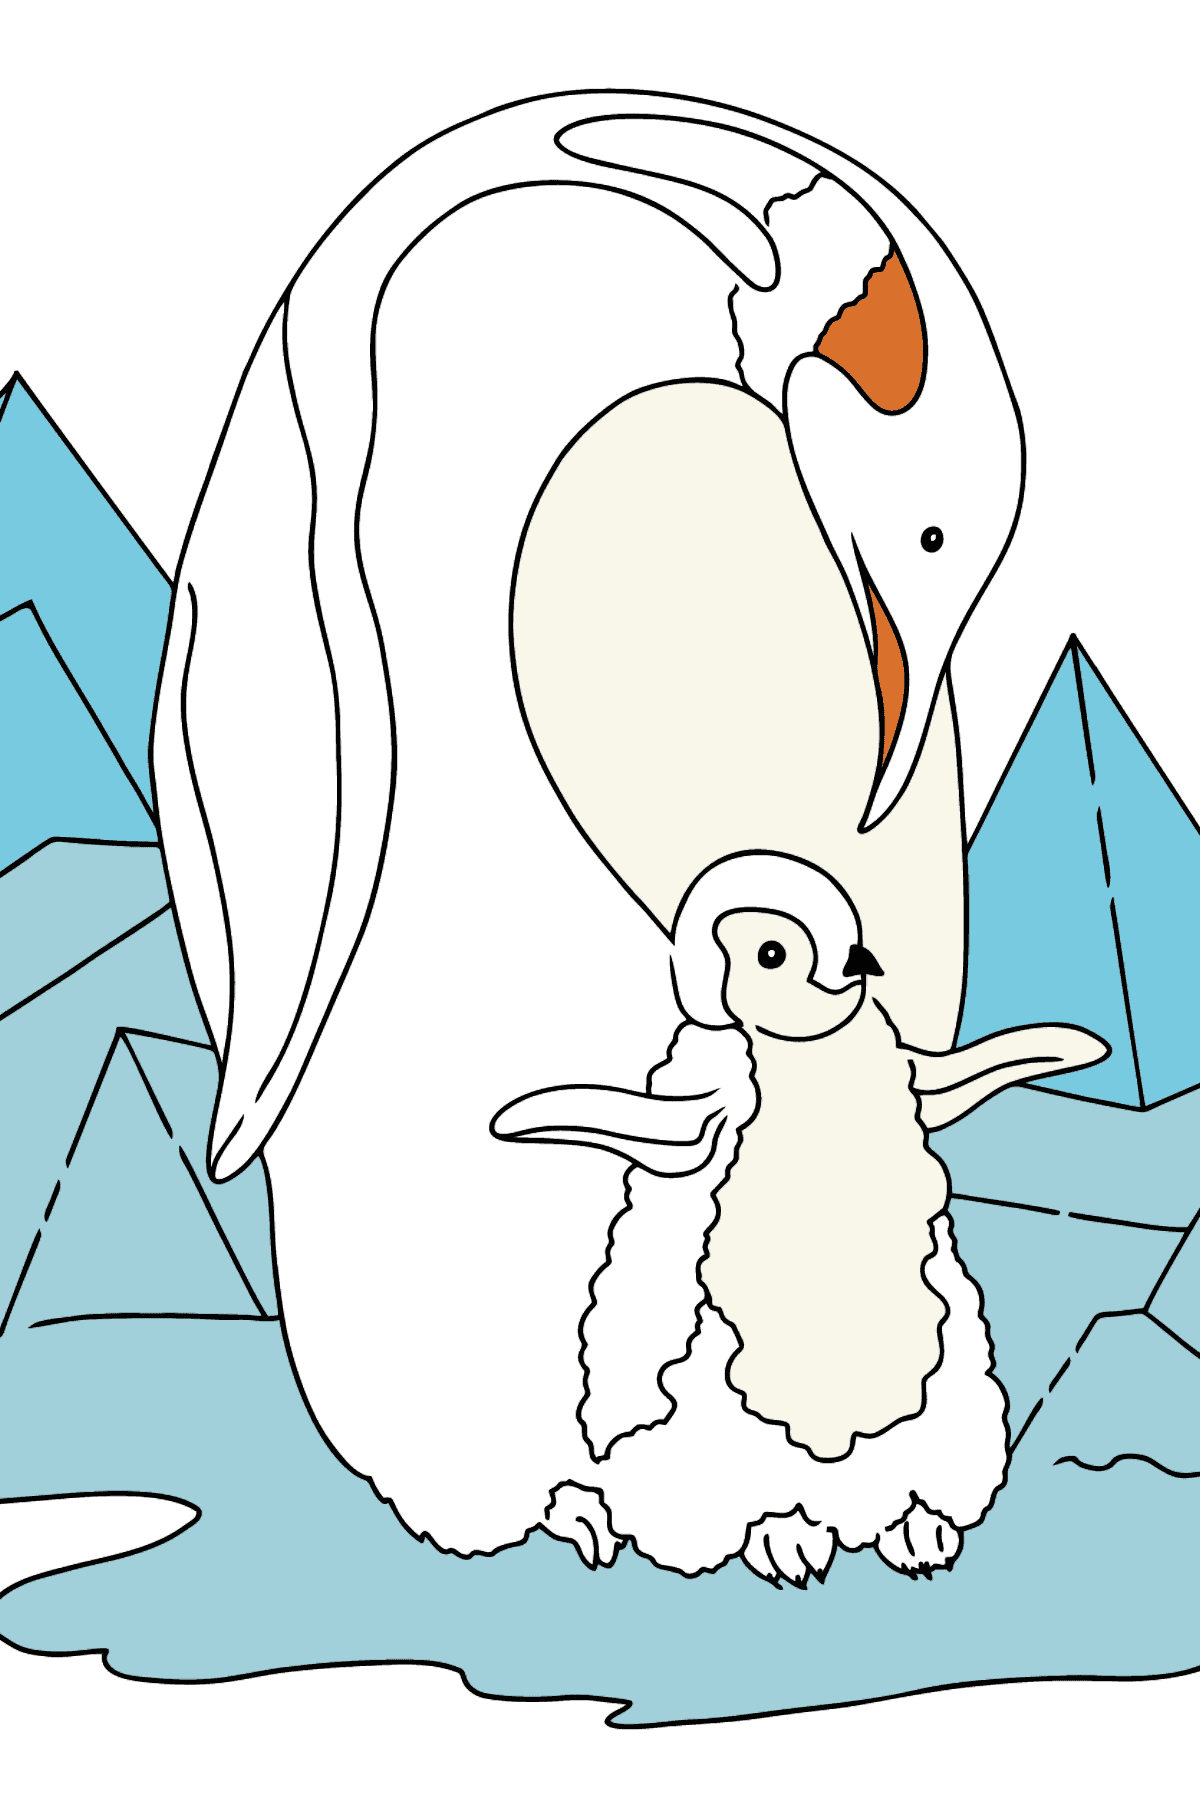 Disegno di Pinguino da colorare - Disegni da colorare per bambini